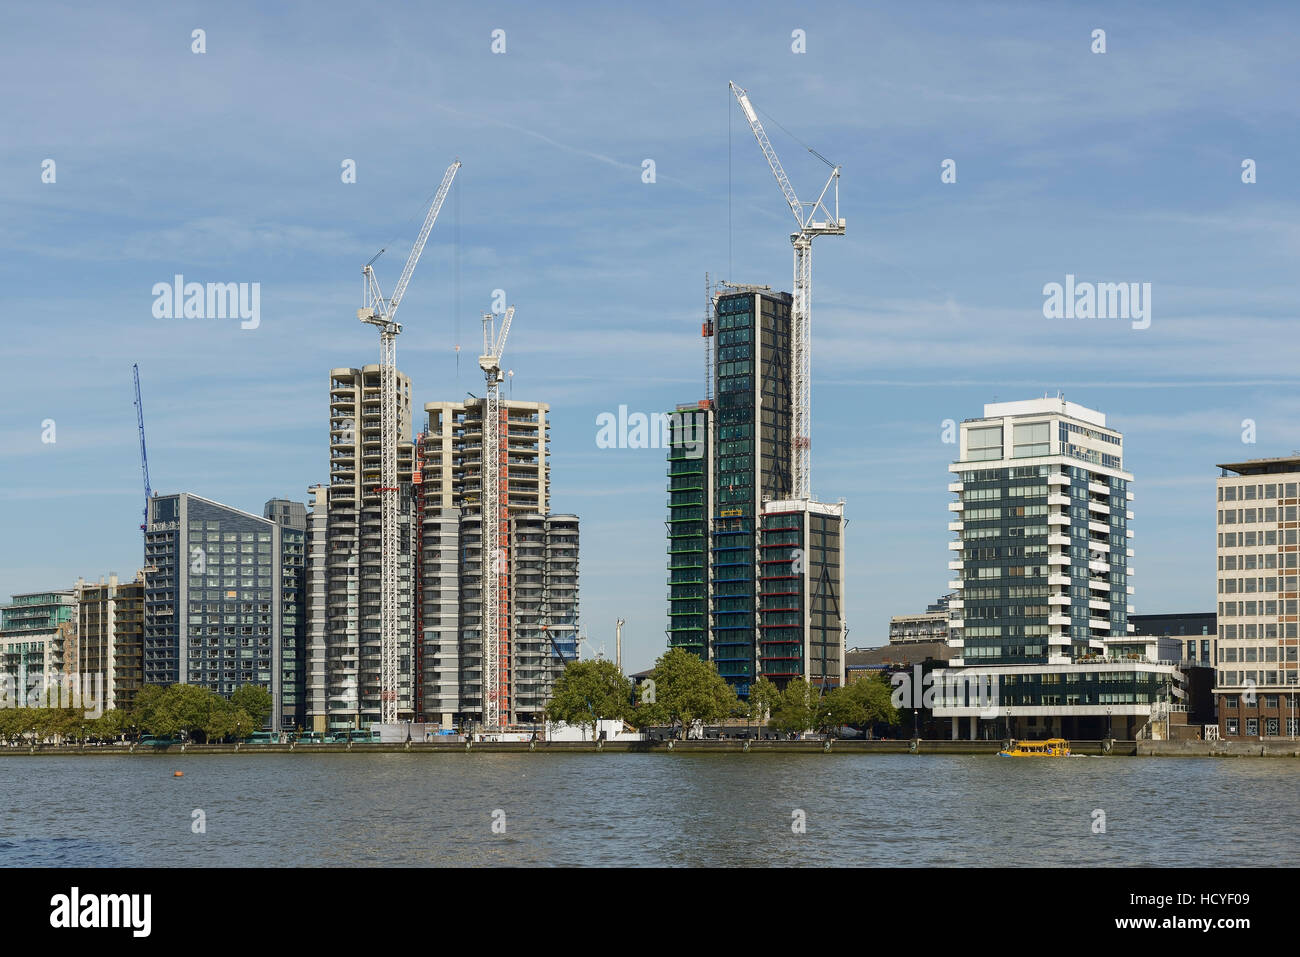 Appartamenti nuovi e blocchi a torre in costruzione lungo il fiume Tamigi a Lambeth London REGNO UNITO Foto Stock